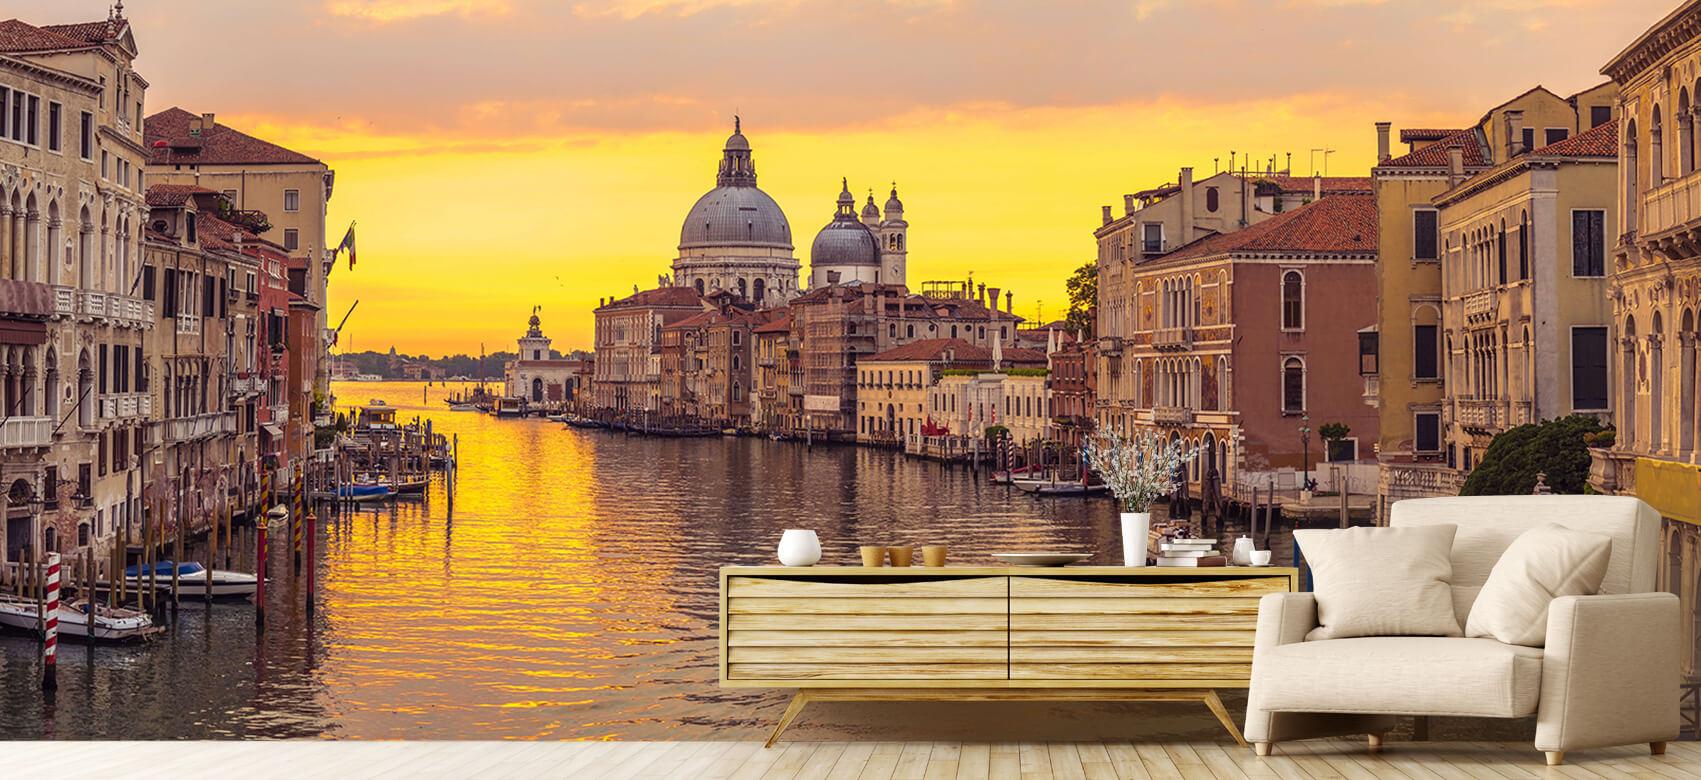 Ciudades - Papel pintado con Canal en Venecia - Salón 1